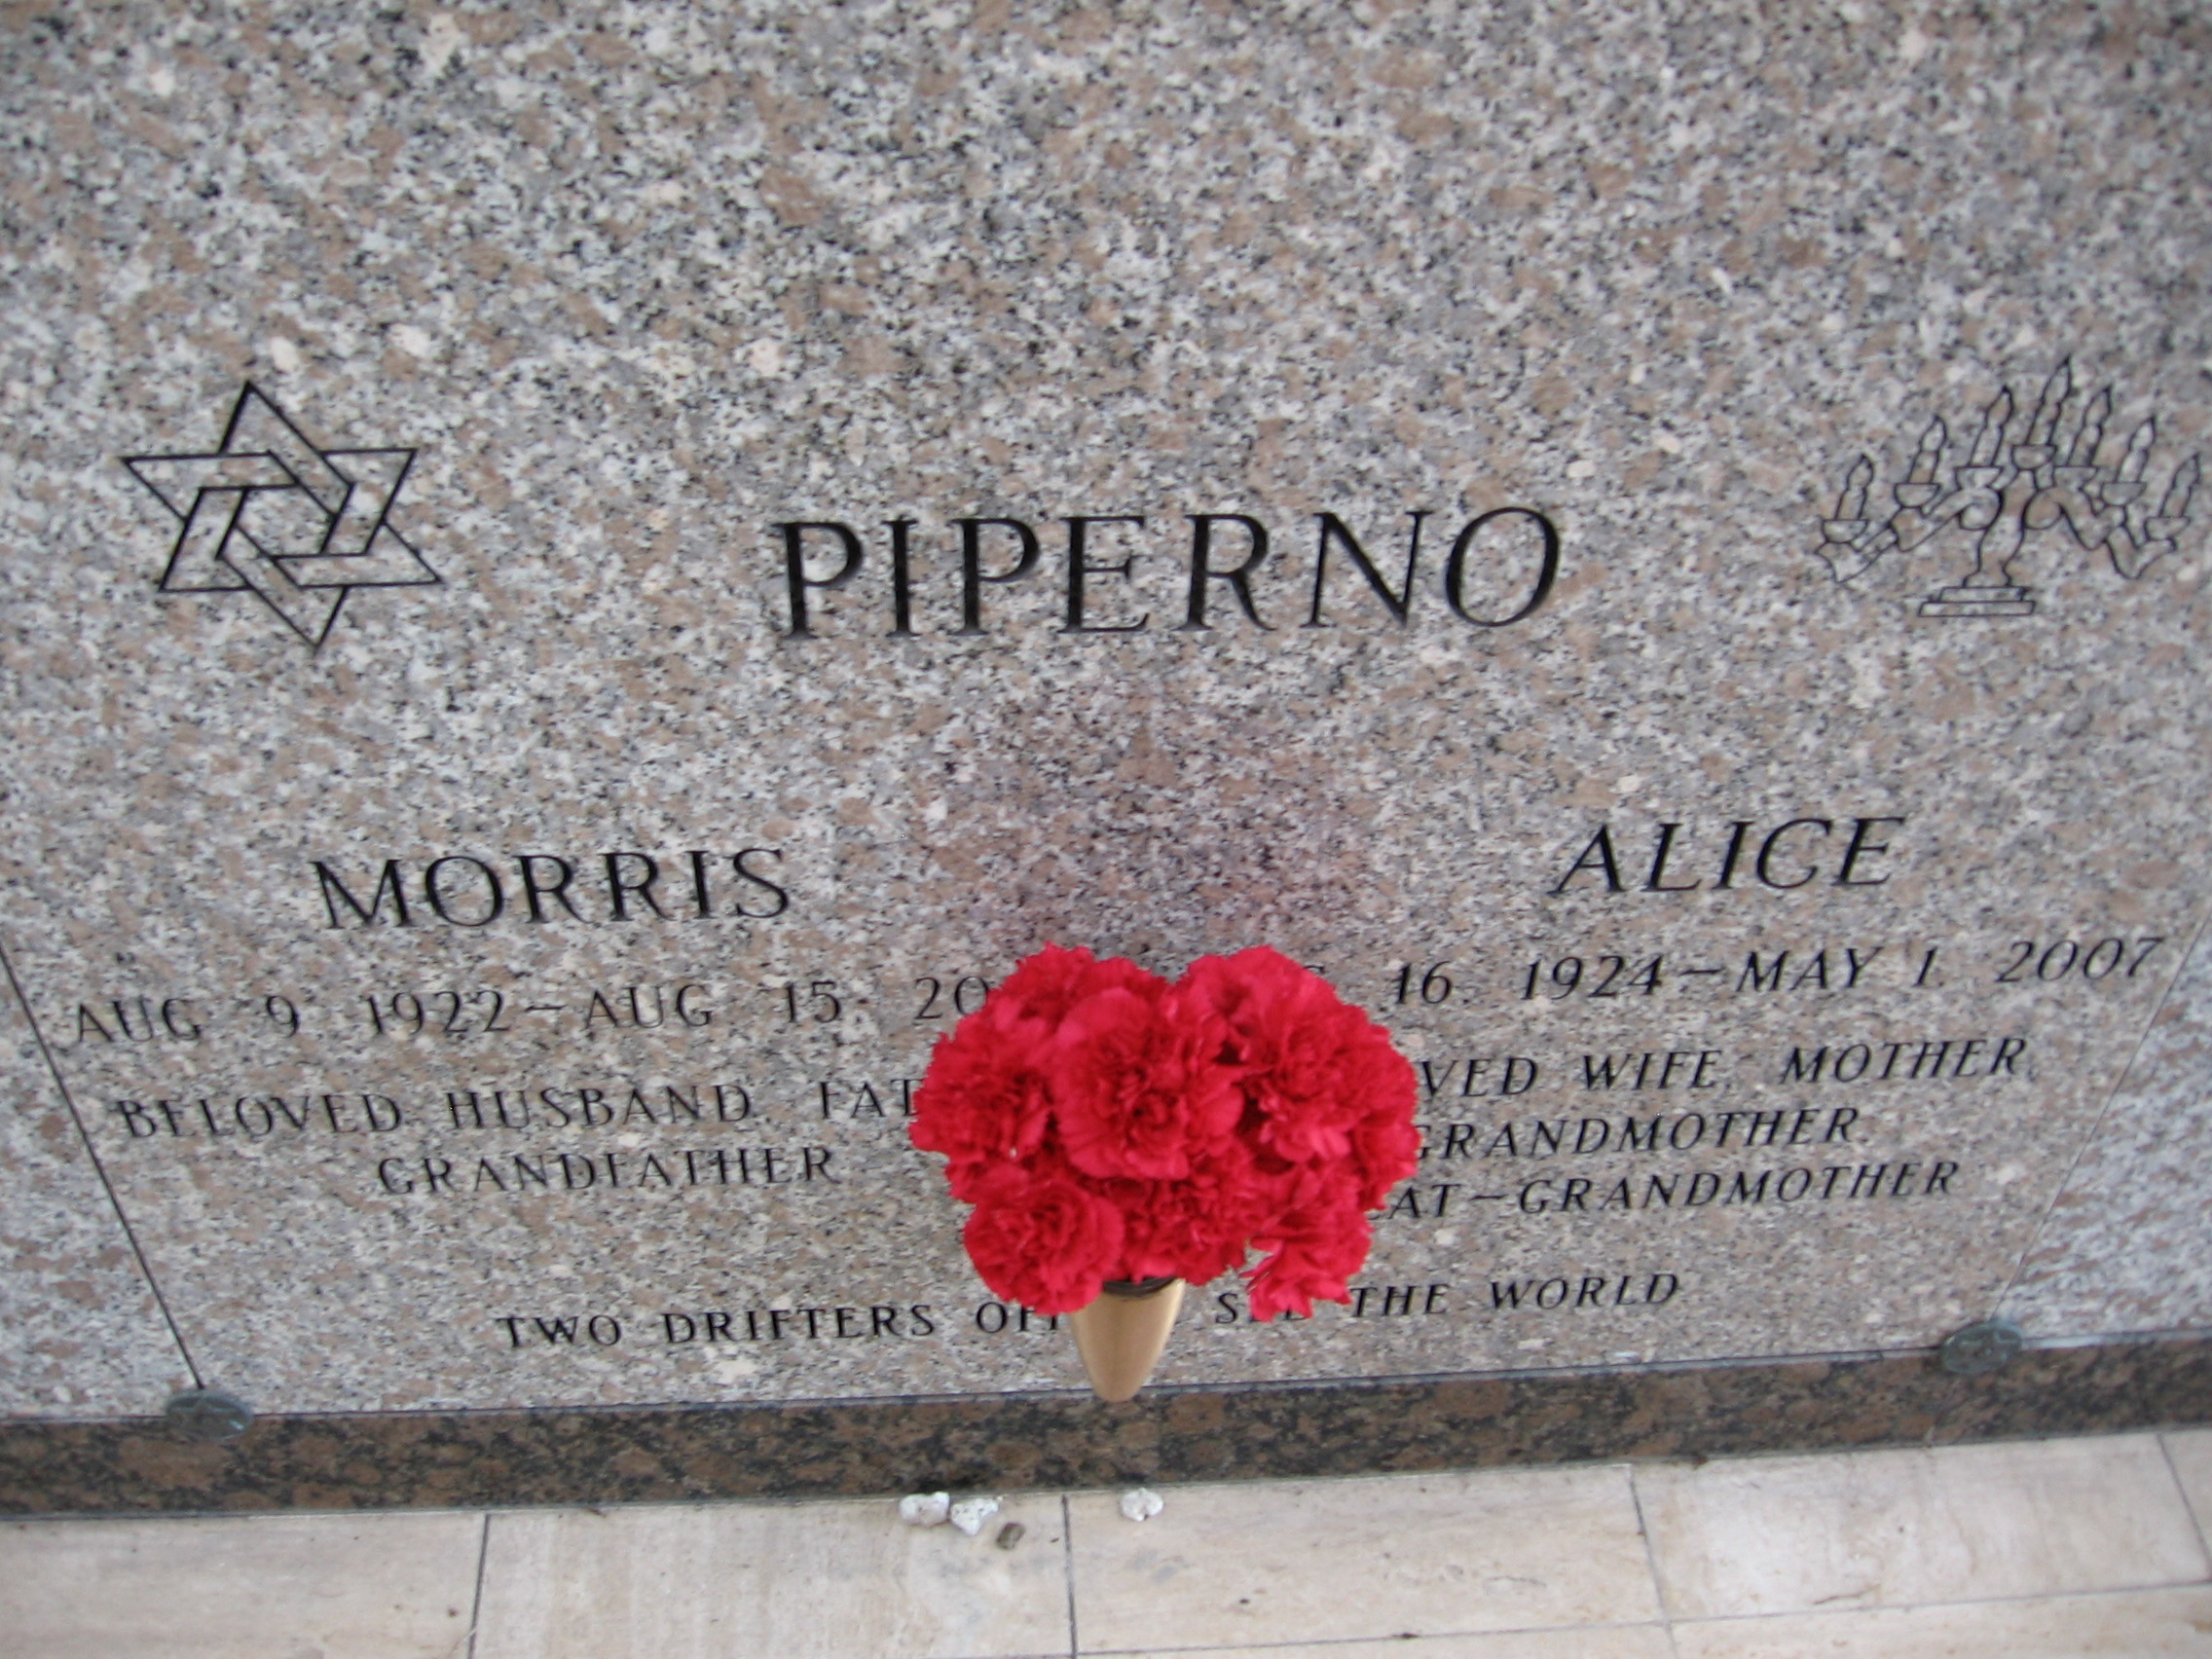 Alice Piperno